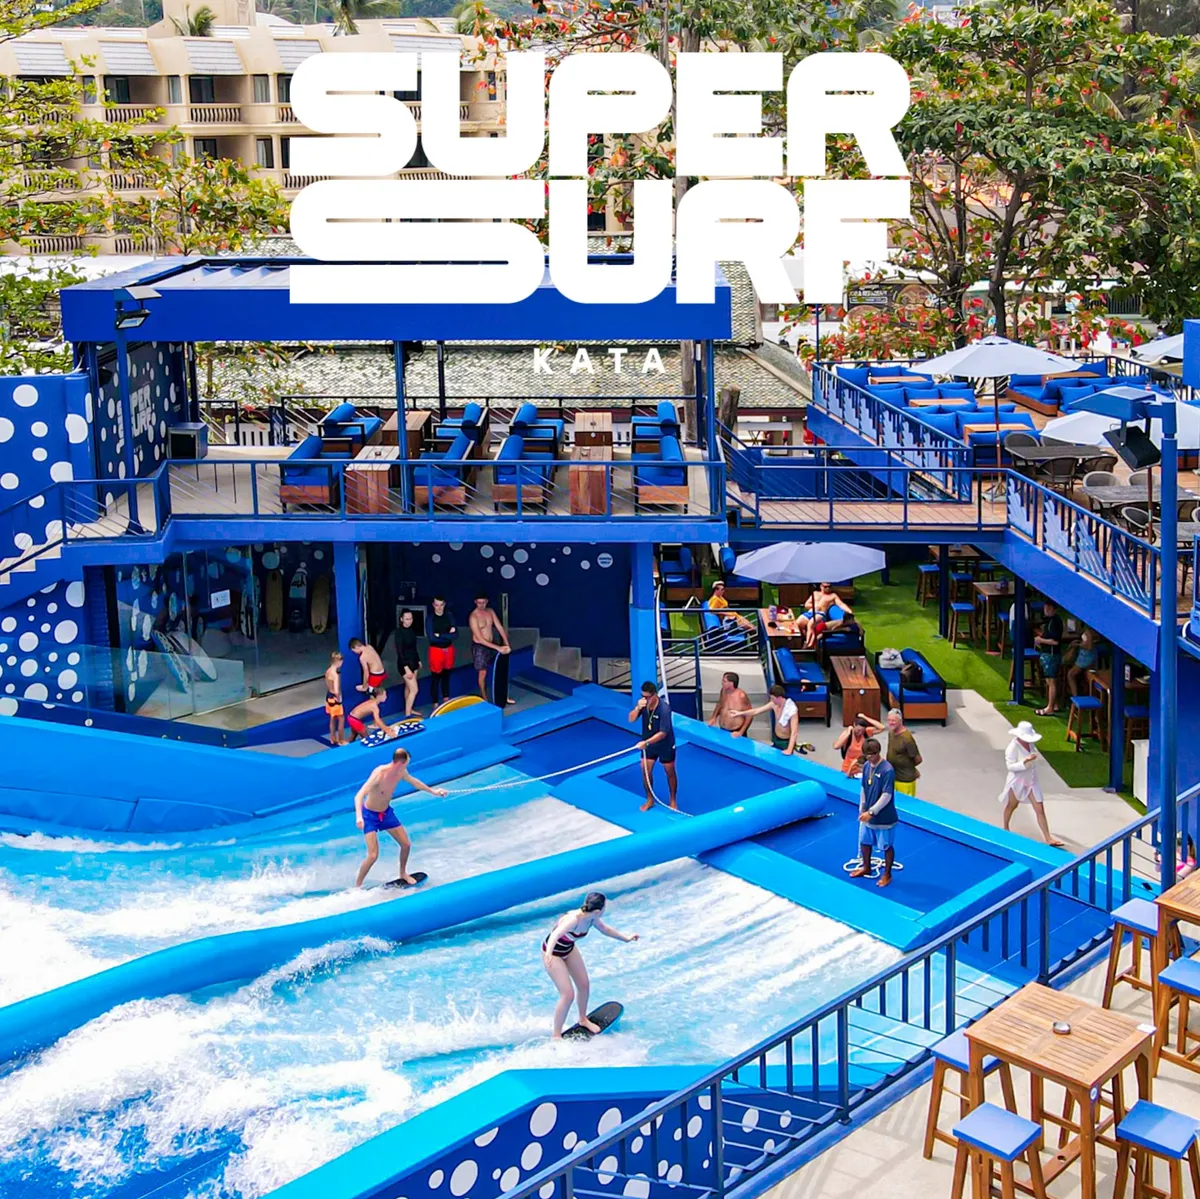 ▷ Super Surf Kata - PHUKET 101